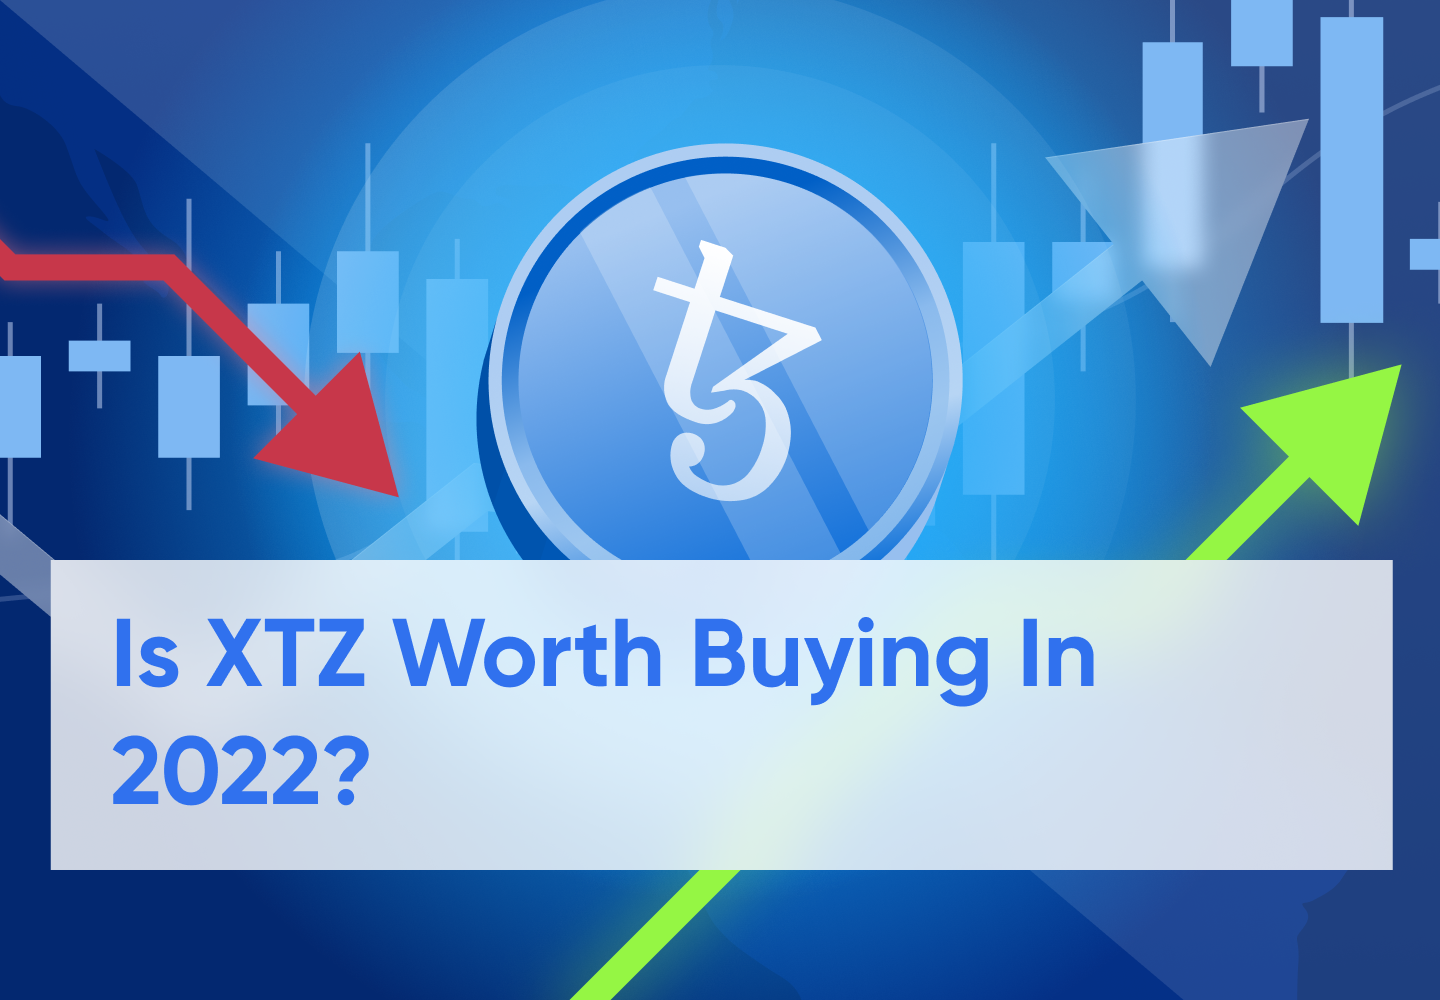 Tezos (XTZ) Price Prediction For 2022 - 2030